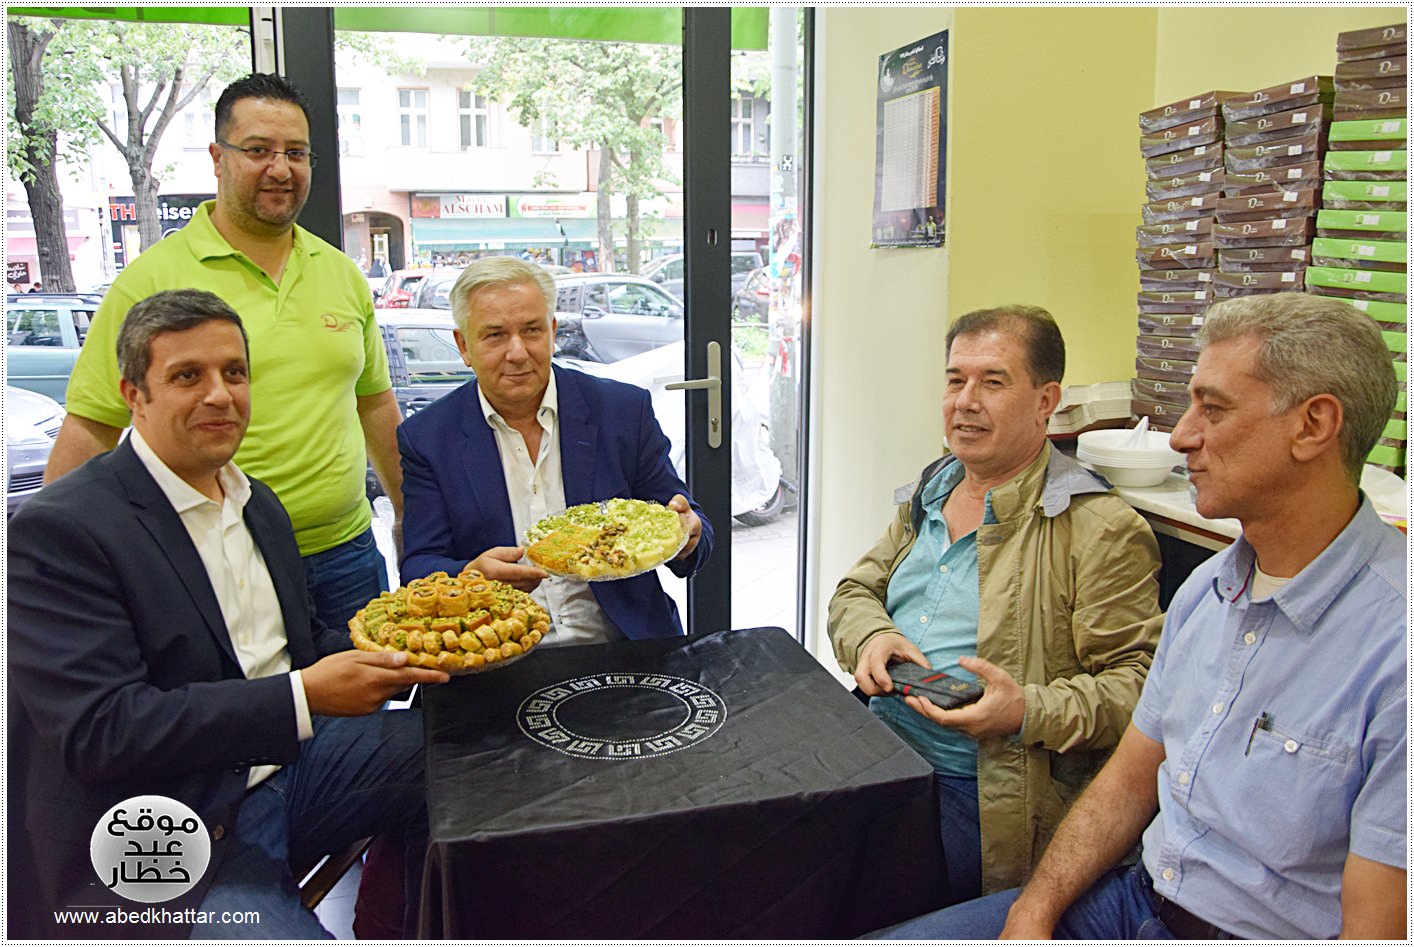 زيارة وفد برلماني الى محل الحلويات Damaskus Konditorei في شارع العرب في برلين